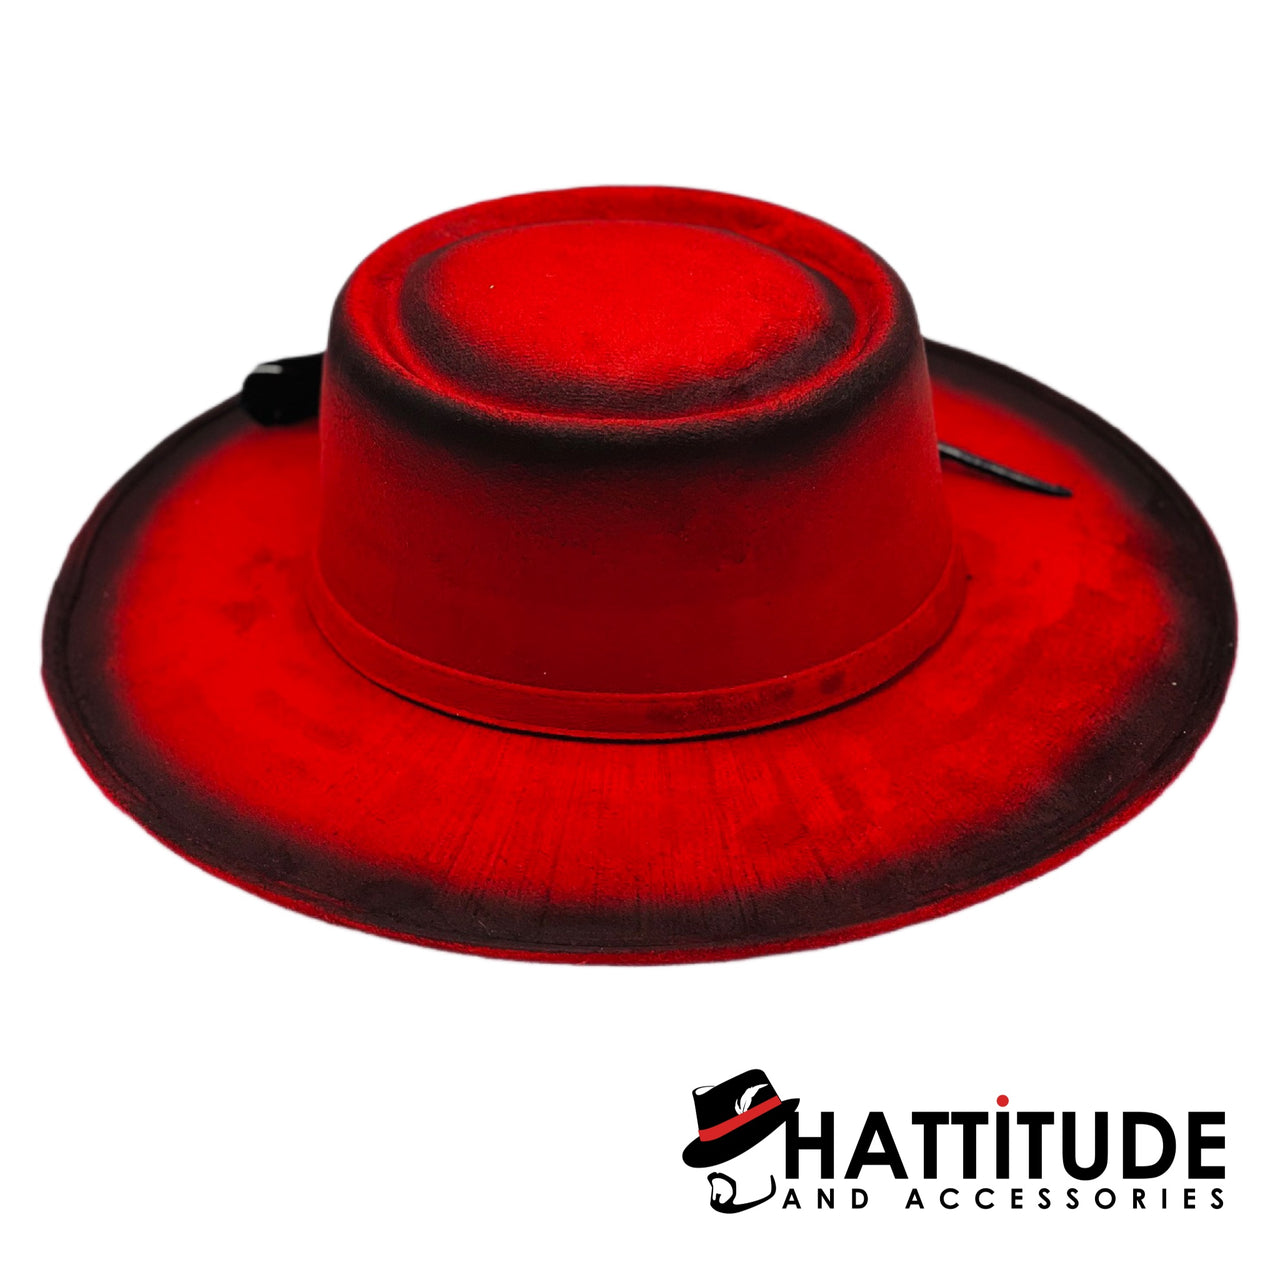 Hattitude Hardaway - Hattitude